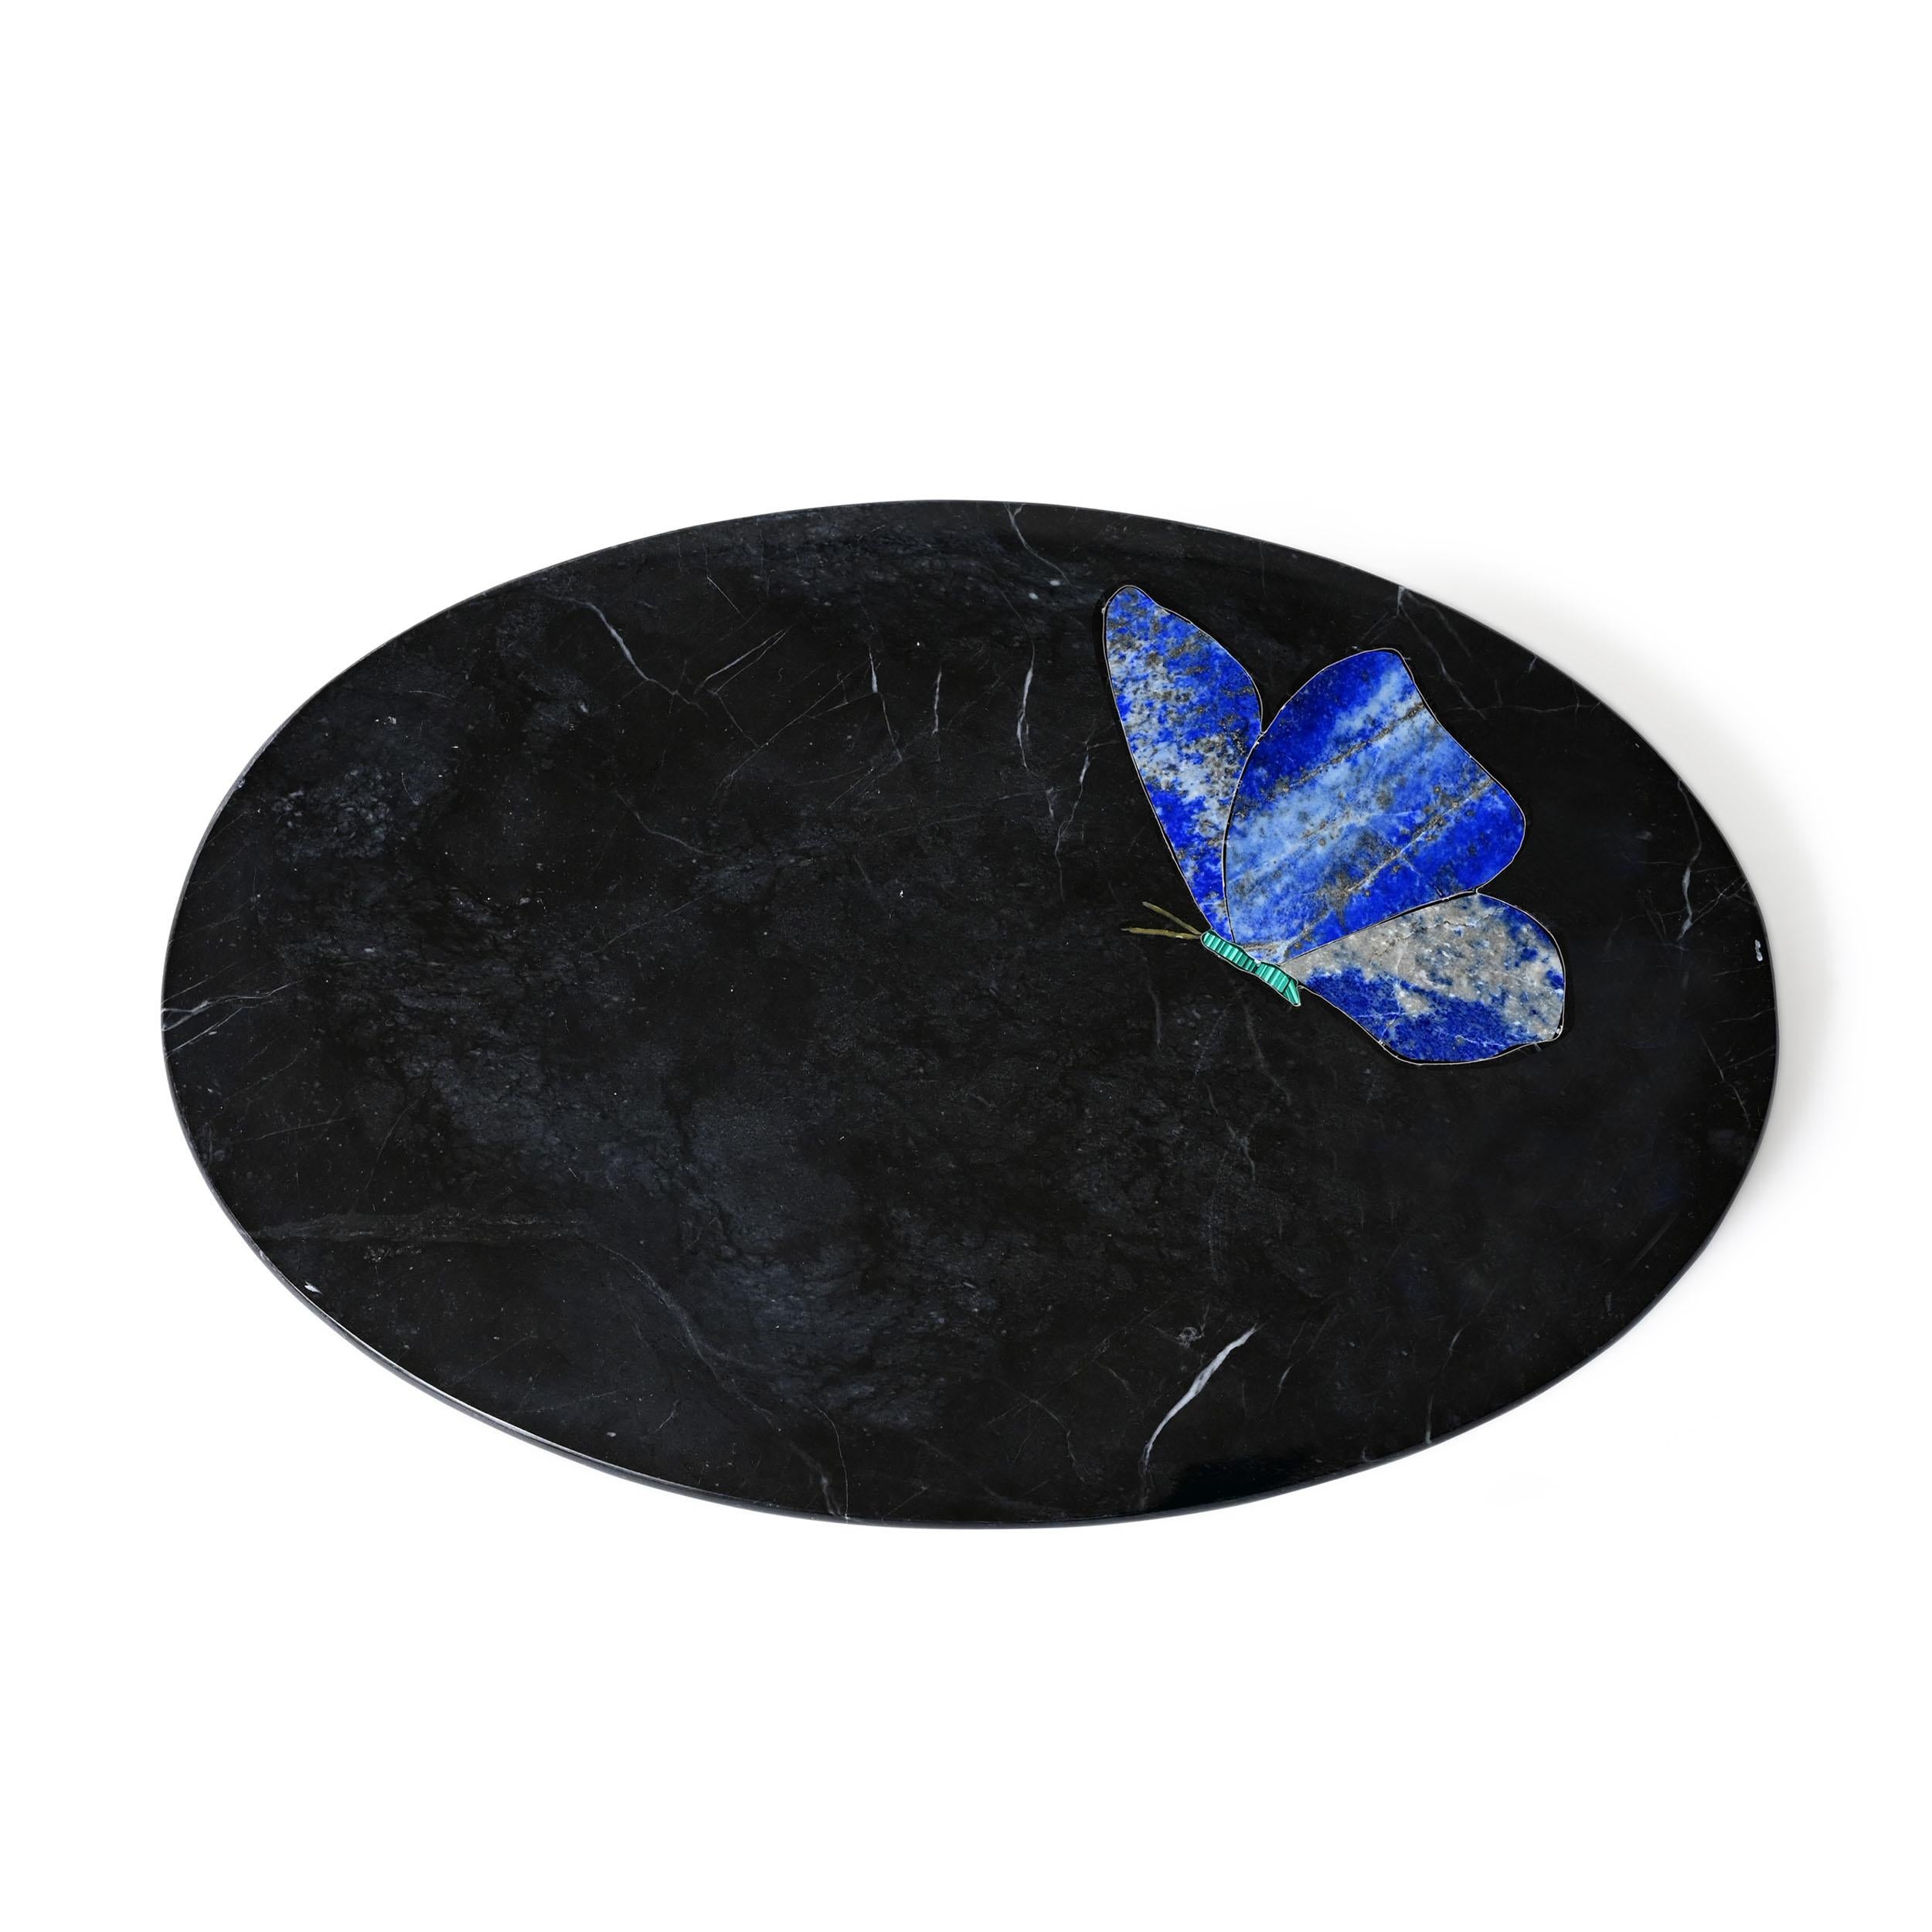 Parvaneh-Platte II von Studio Lel
Abmessungen: T30,5 x H30,5 x H2,5 cm
MATERIALIEN: Marmor

Das Wort Ara ist die lautmalerische Gattung des Aras und bezieht sich auf die Laute, die die leuchtenden Papageien, die in jedem Stück der Kollektion